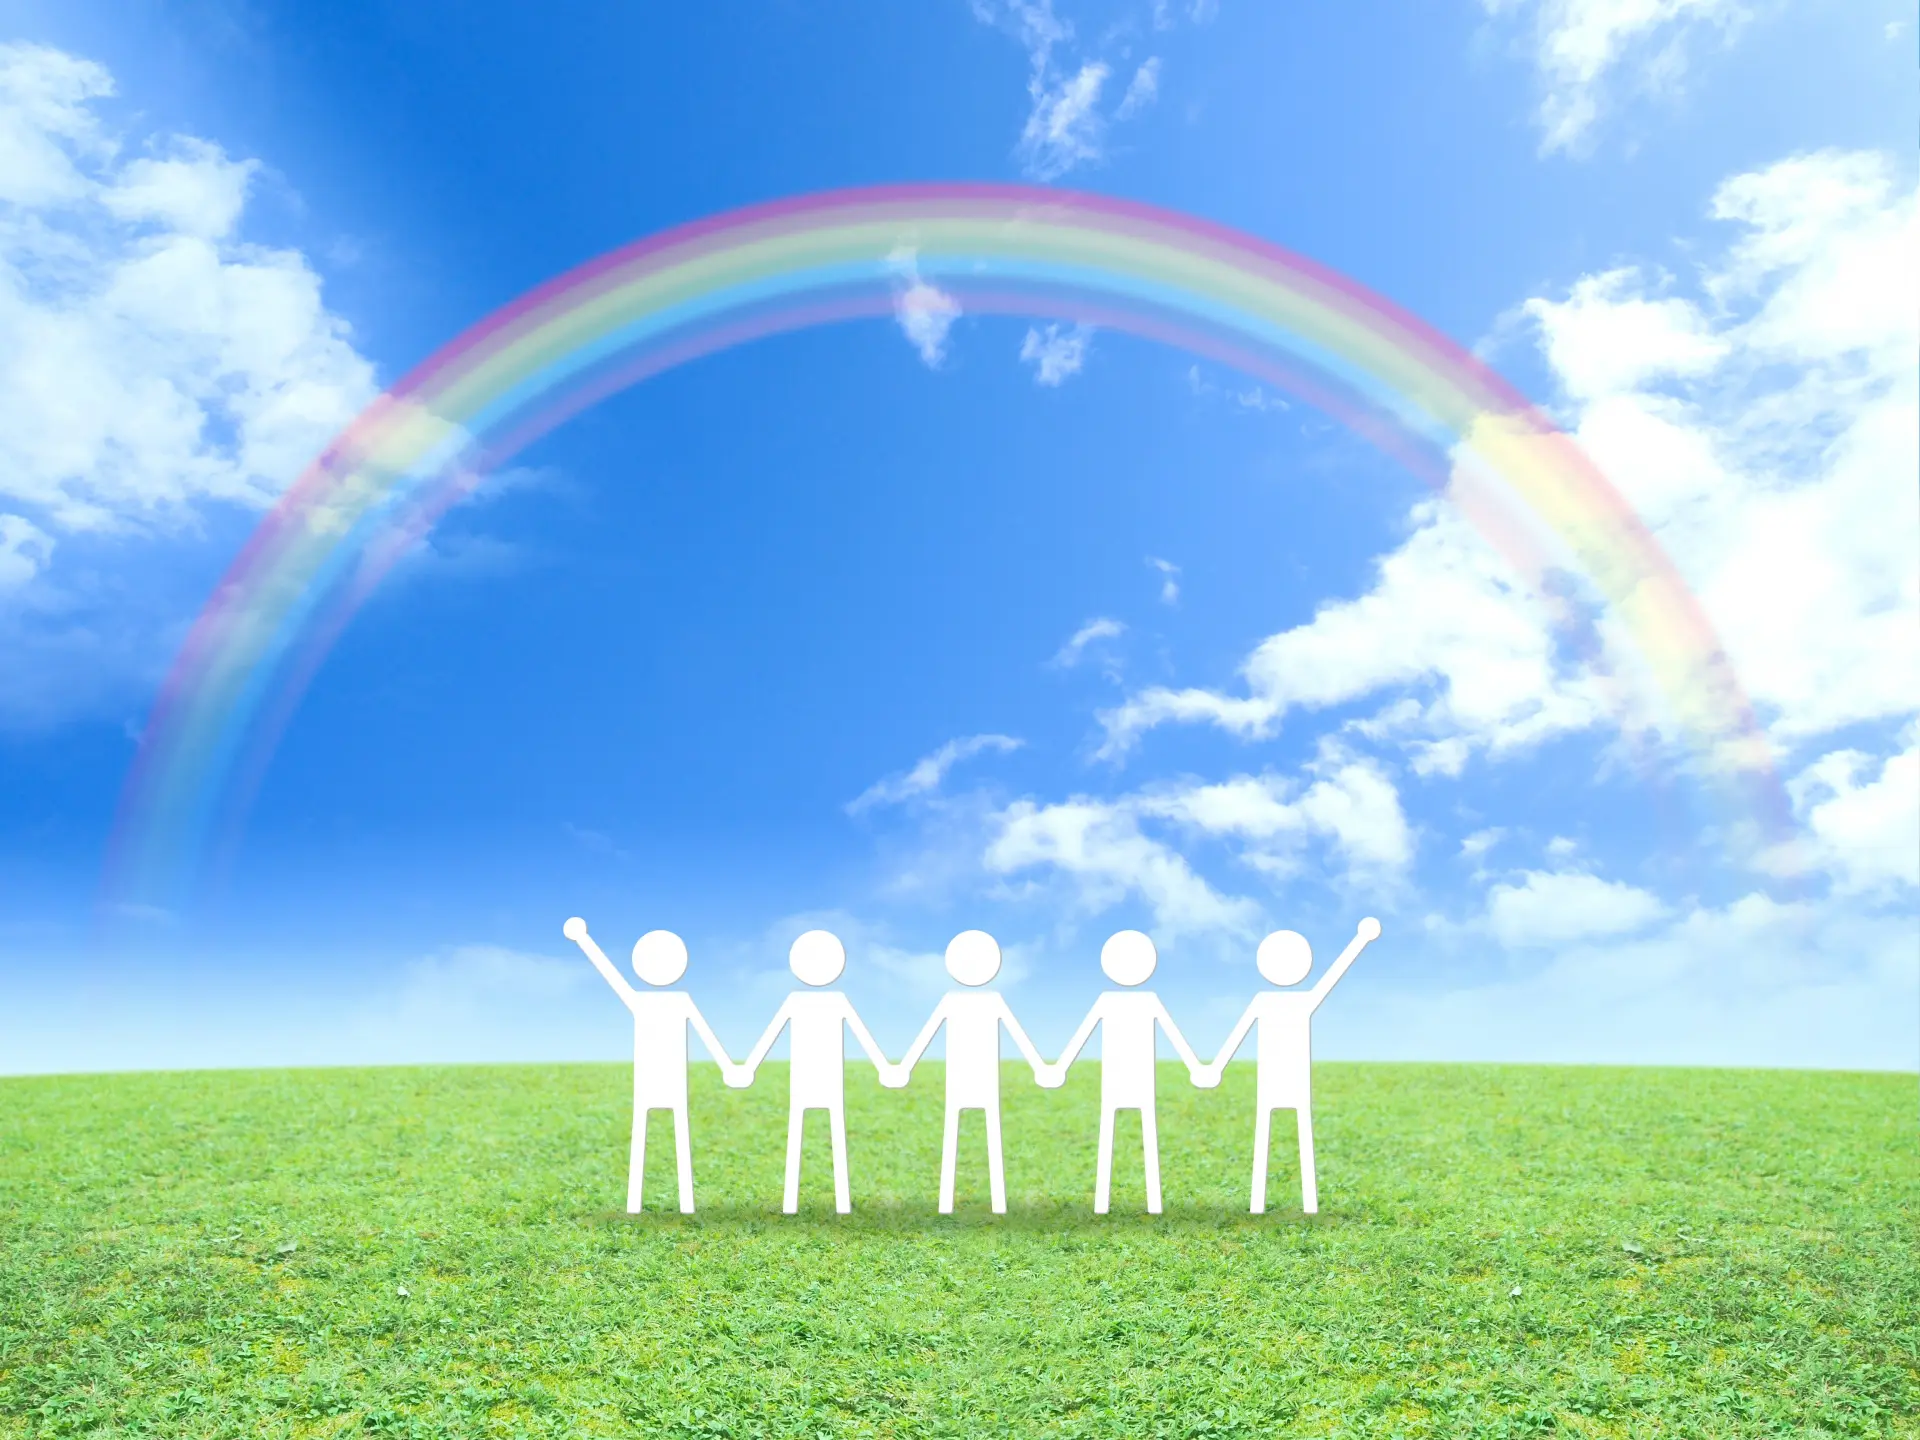 アイキャッチ_青い空と虹がかかっている草原にイラストの棒人間が5名横並びで手を繋いでいる画像